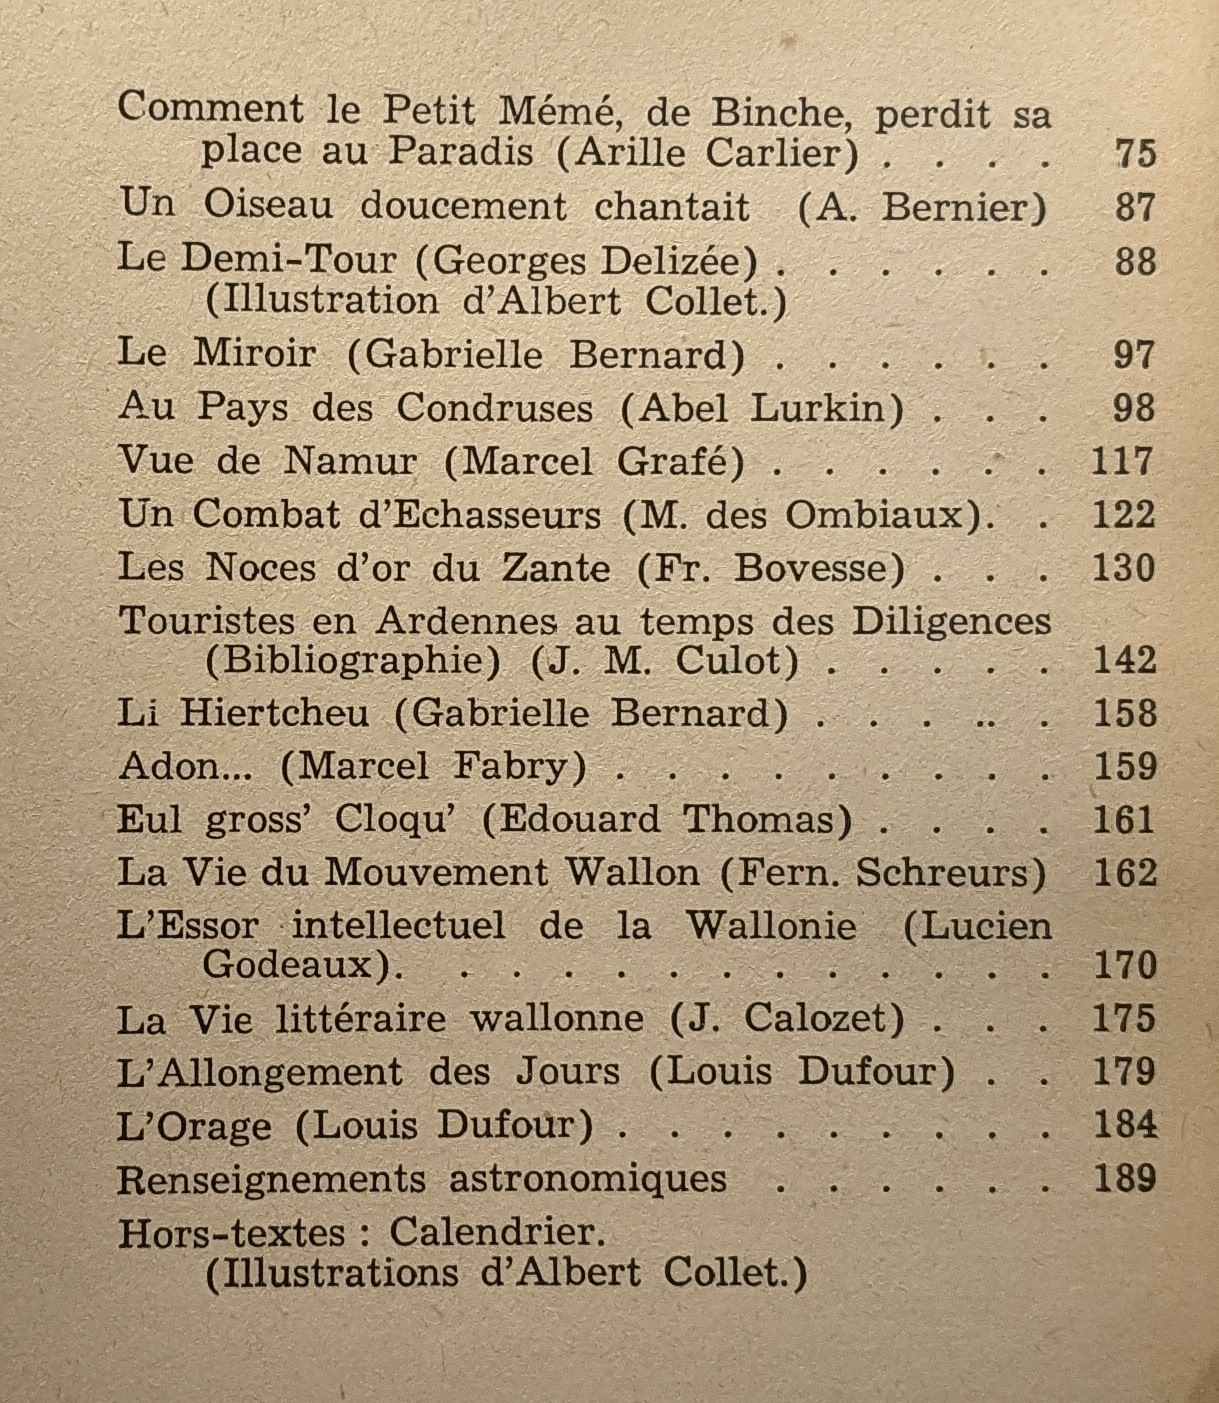 Almanach Wallon 1949